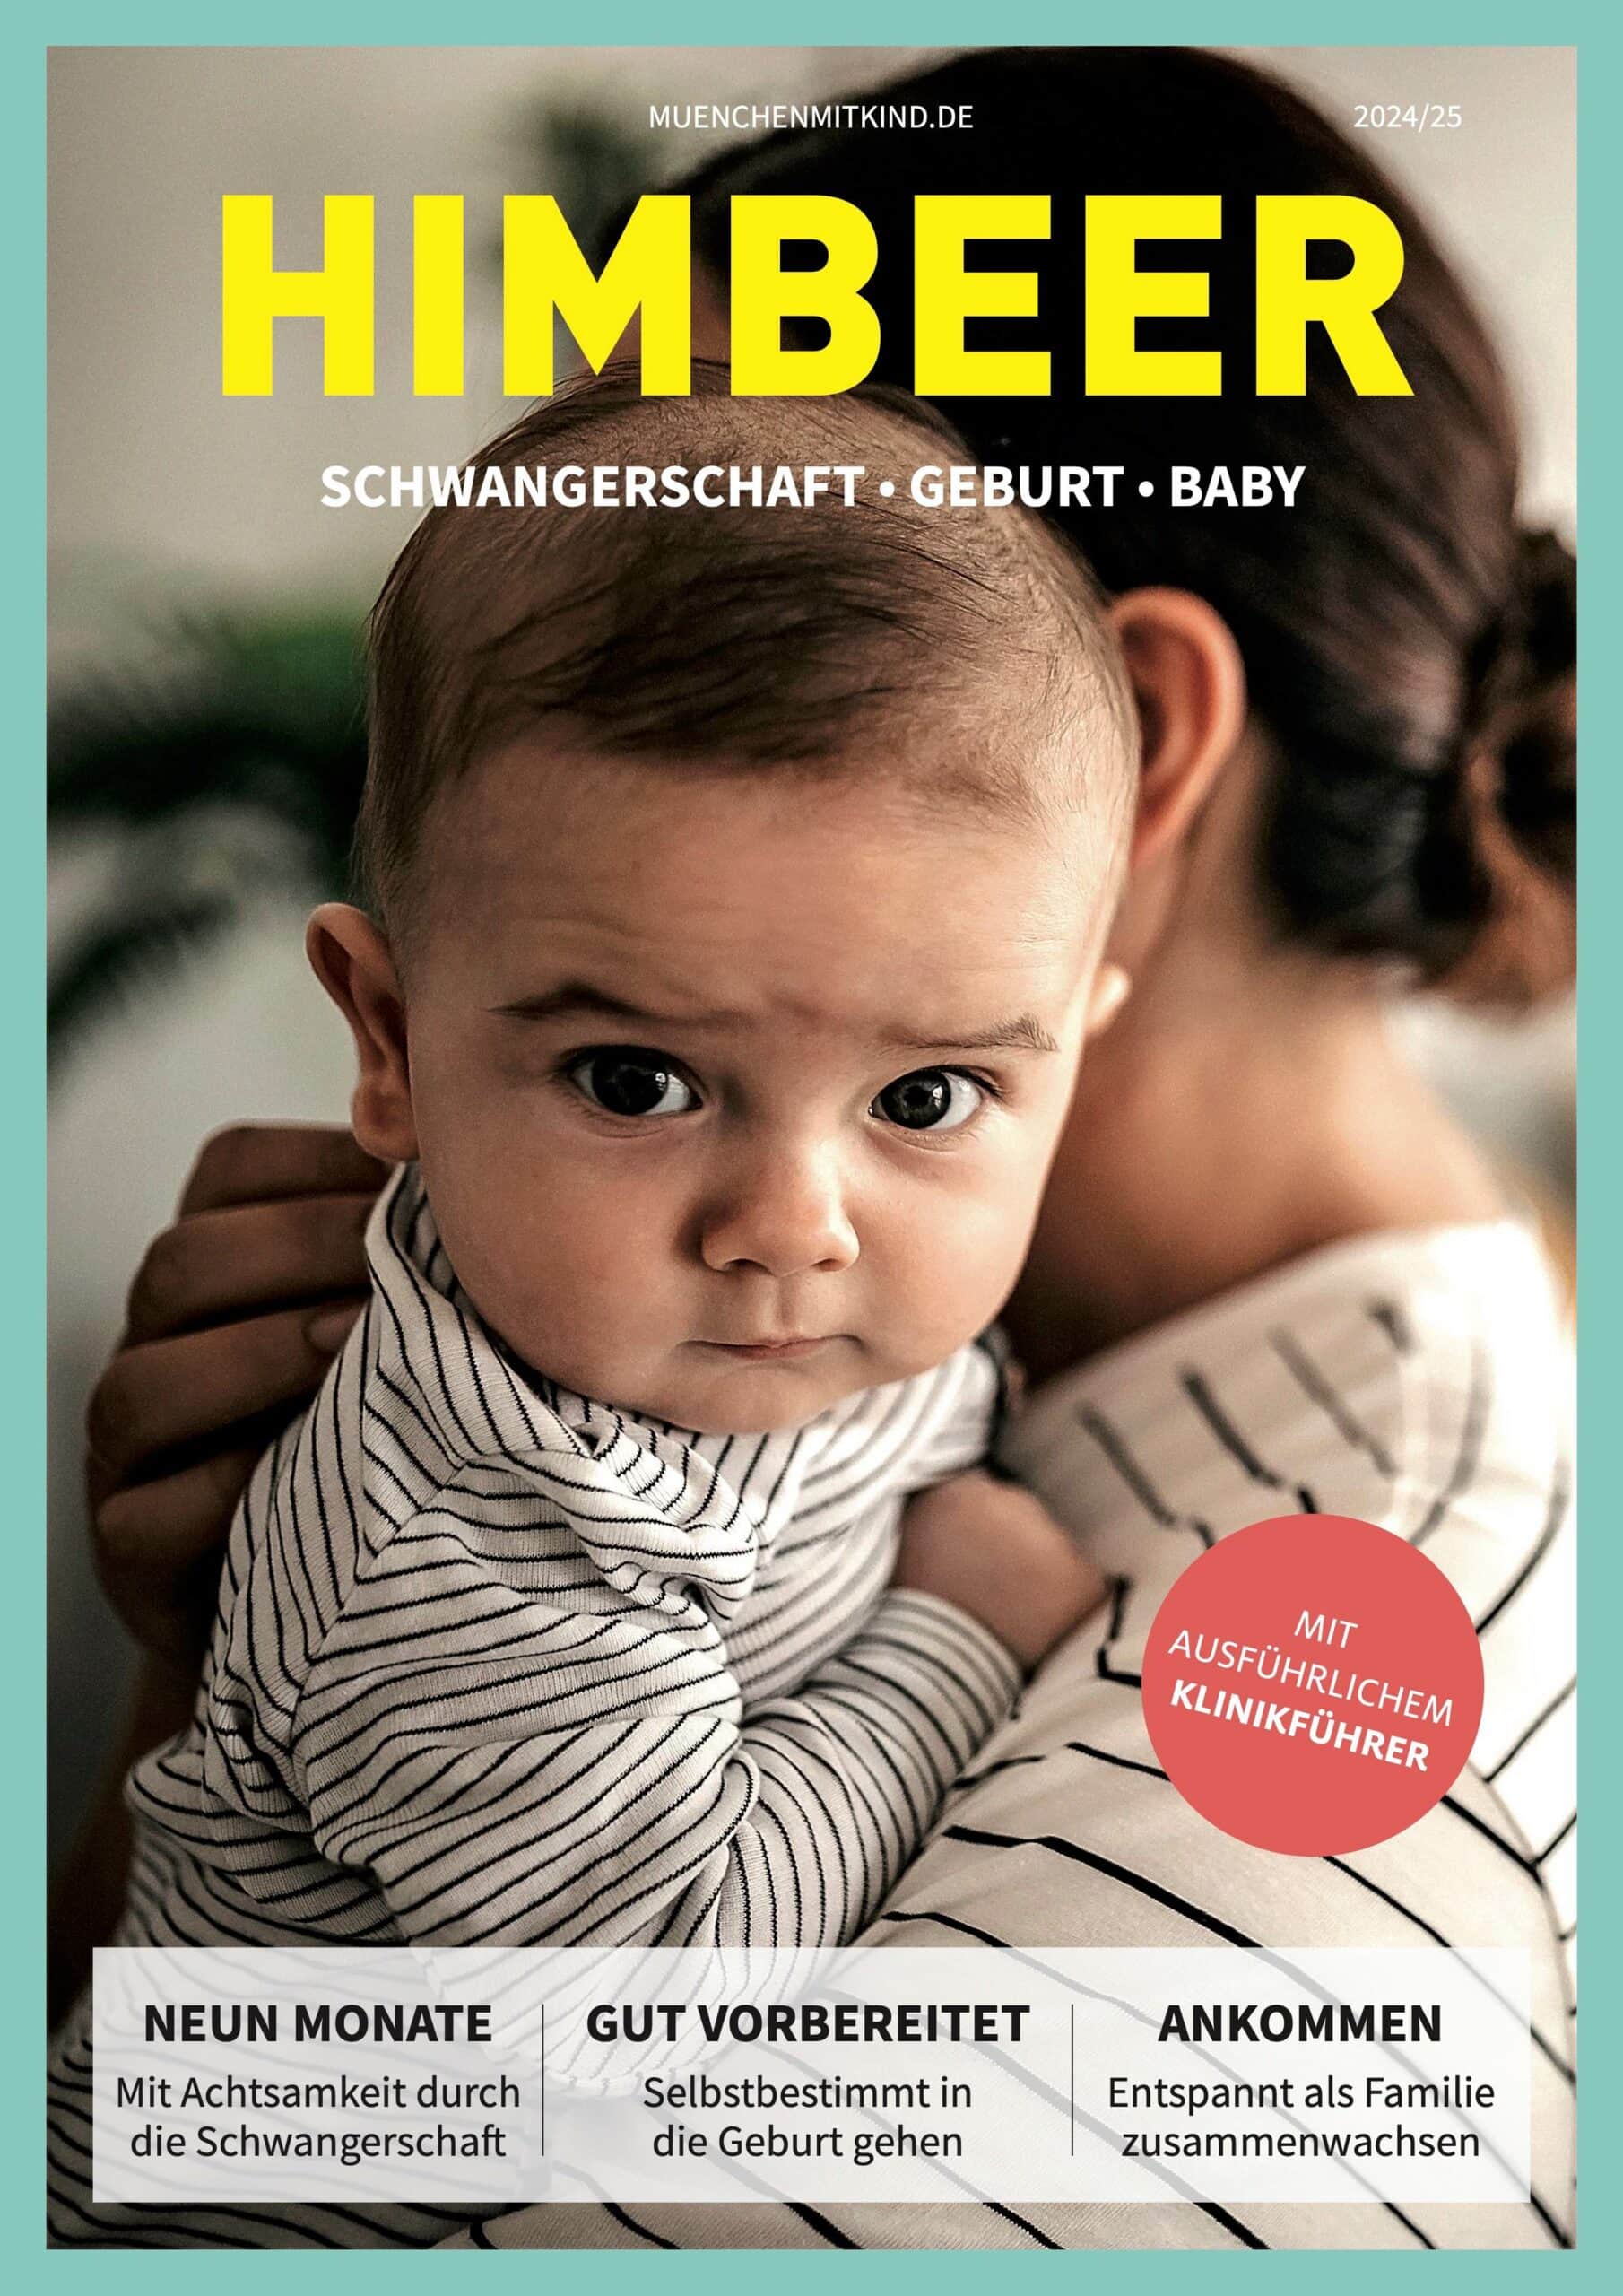 HIMBEER Baby-Edition 2024/25: Edition HIMBEER Schwangerschaft-Geburt-Baby in München // HIMBEER